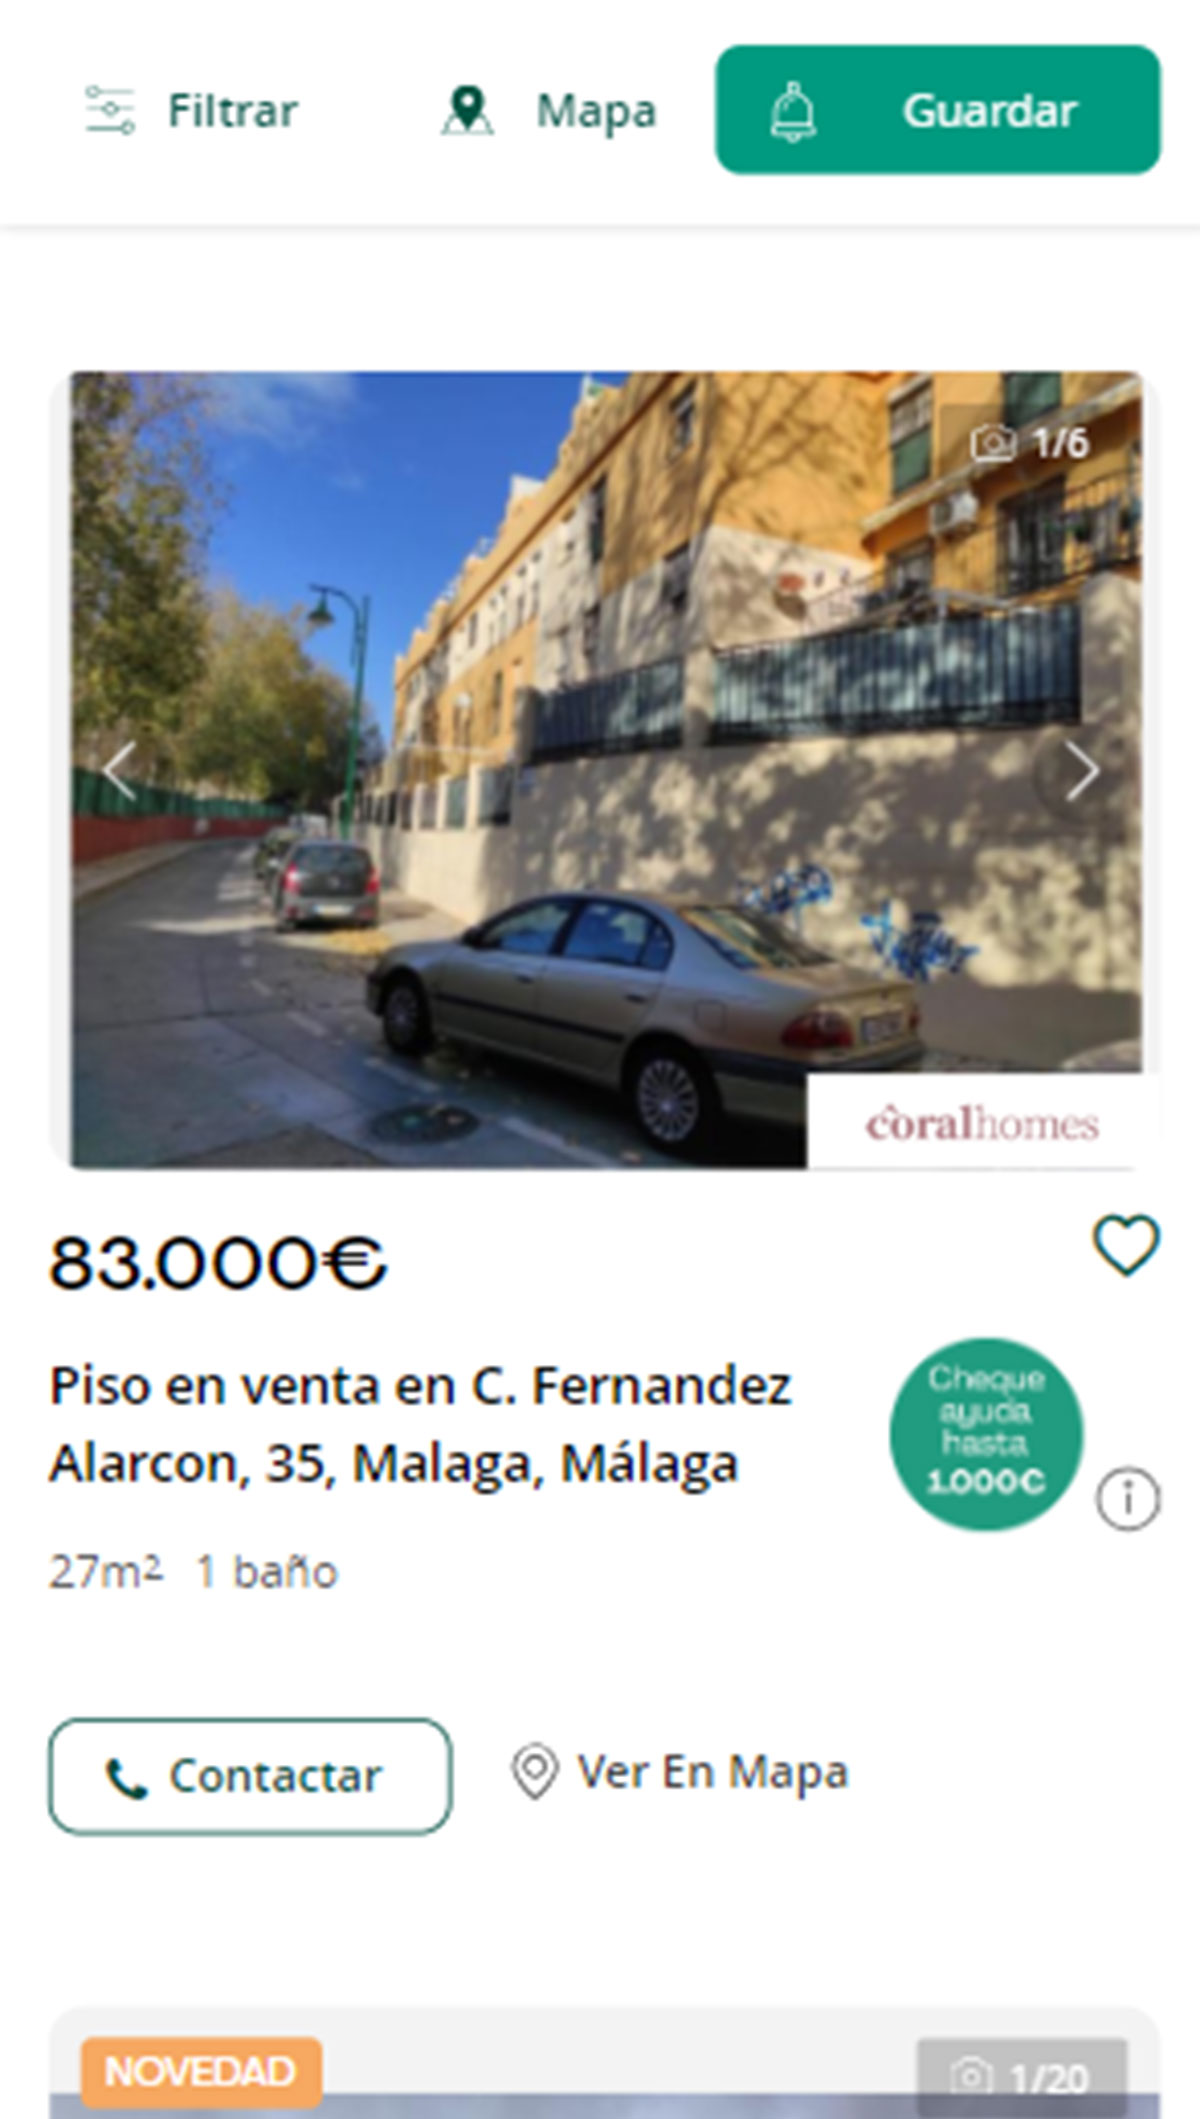 Piso a la venta en Málaga por 83.000 euros